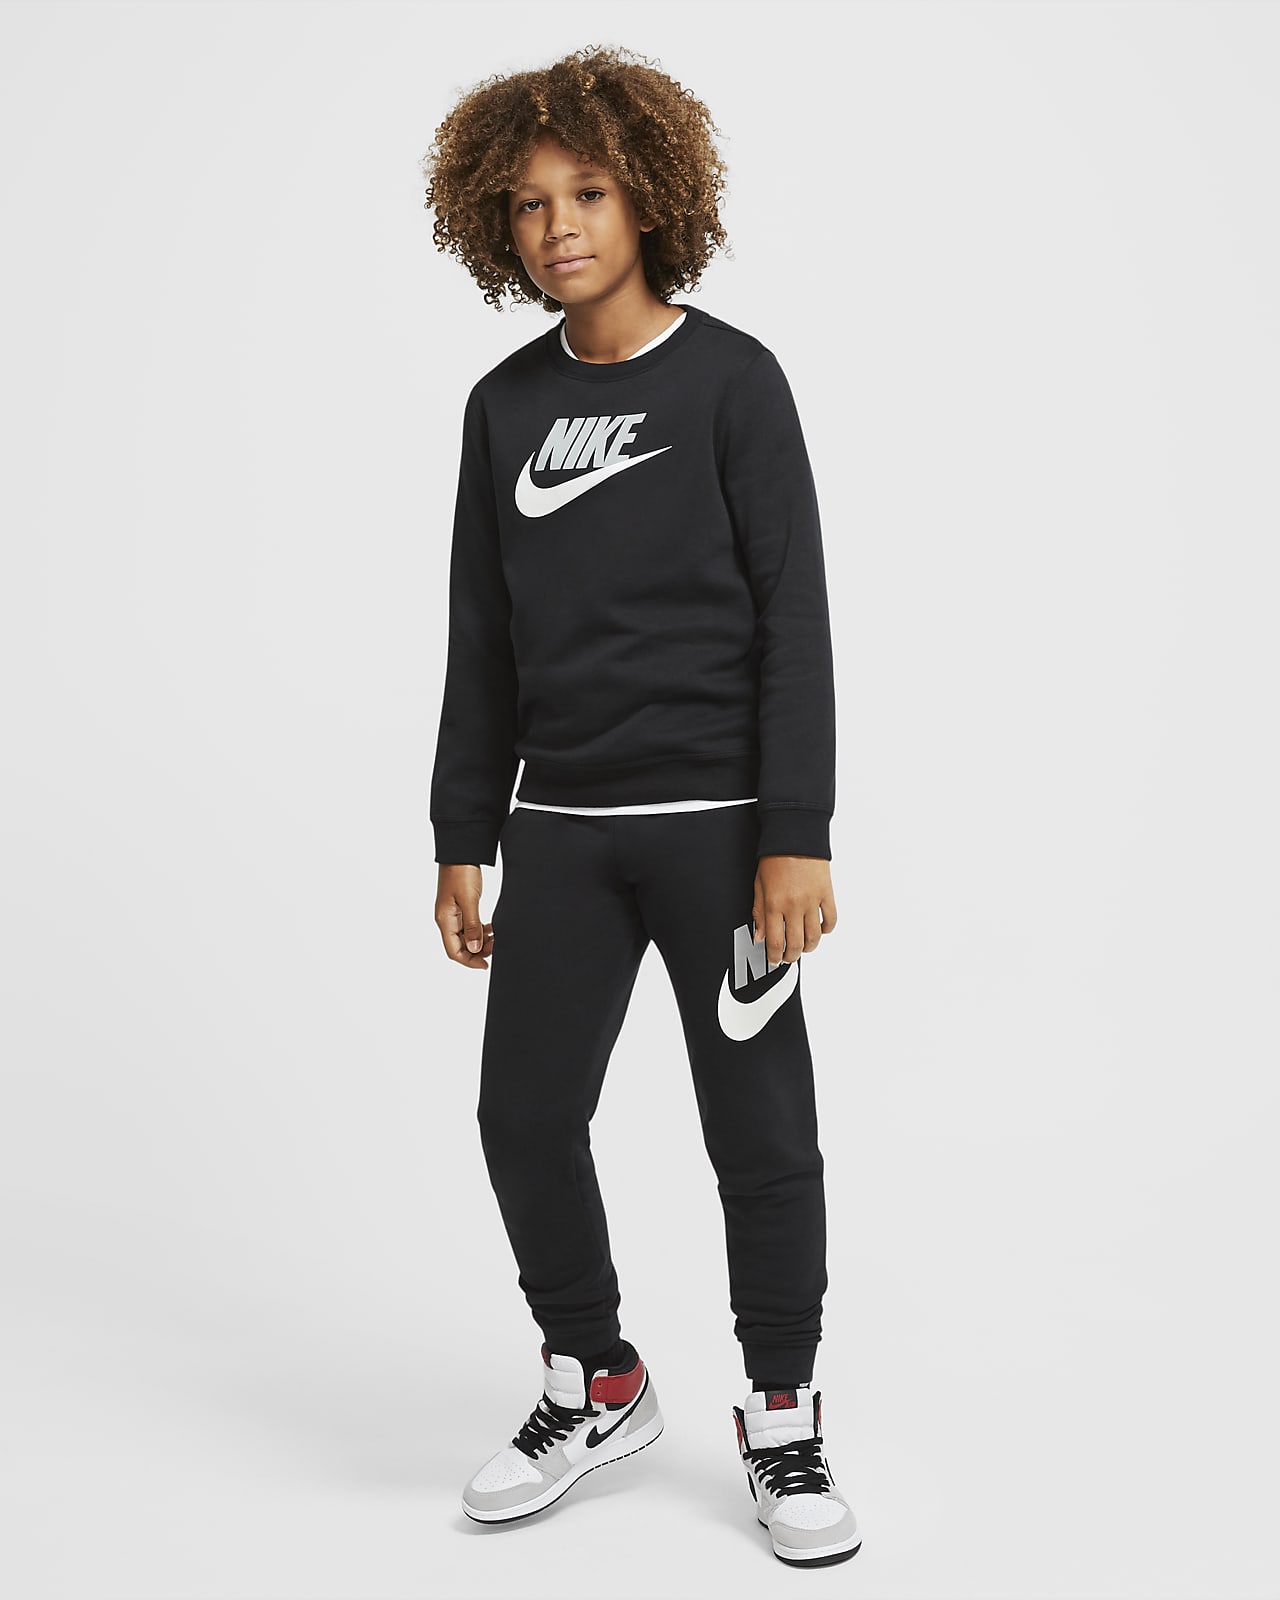 werkwoord zomer Conclusie Nike Sportswear Club Fleece Big Kids' (Boys') Crew. Nike.com